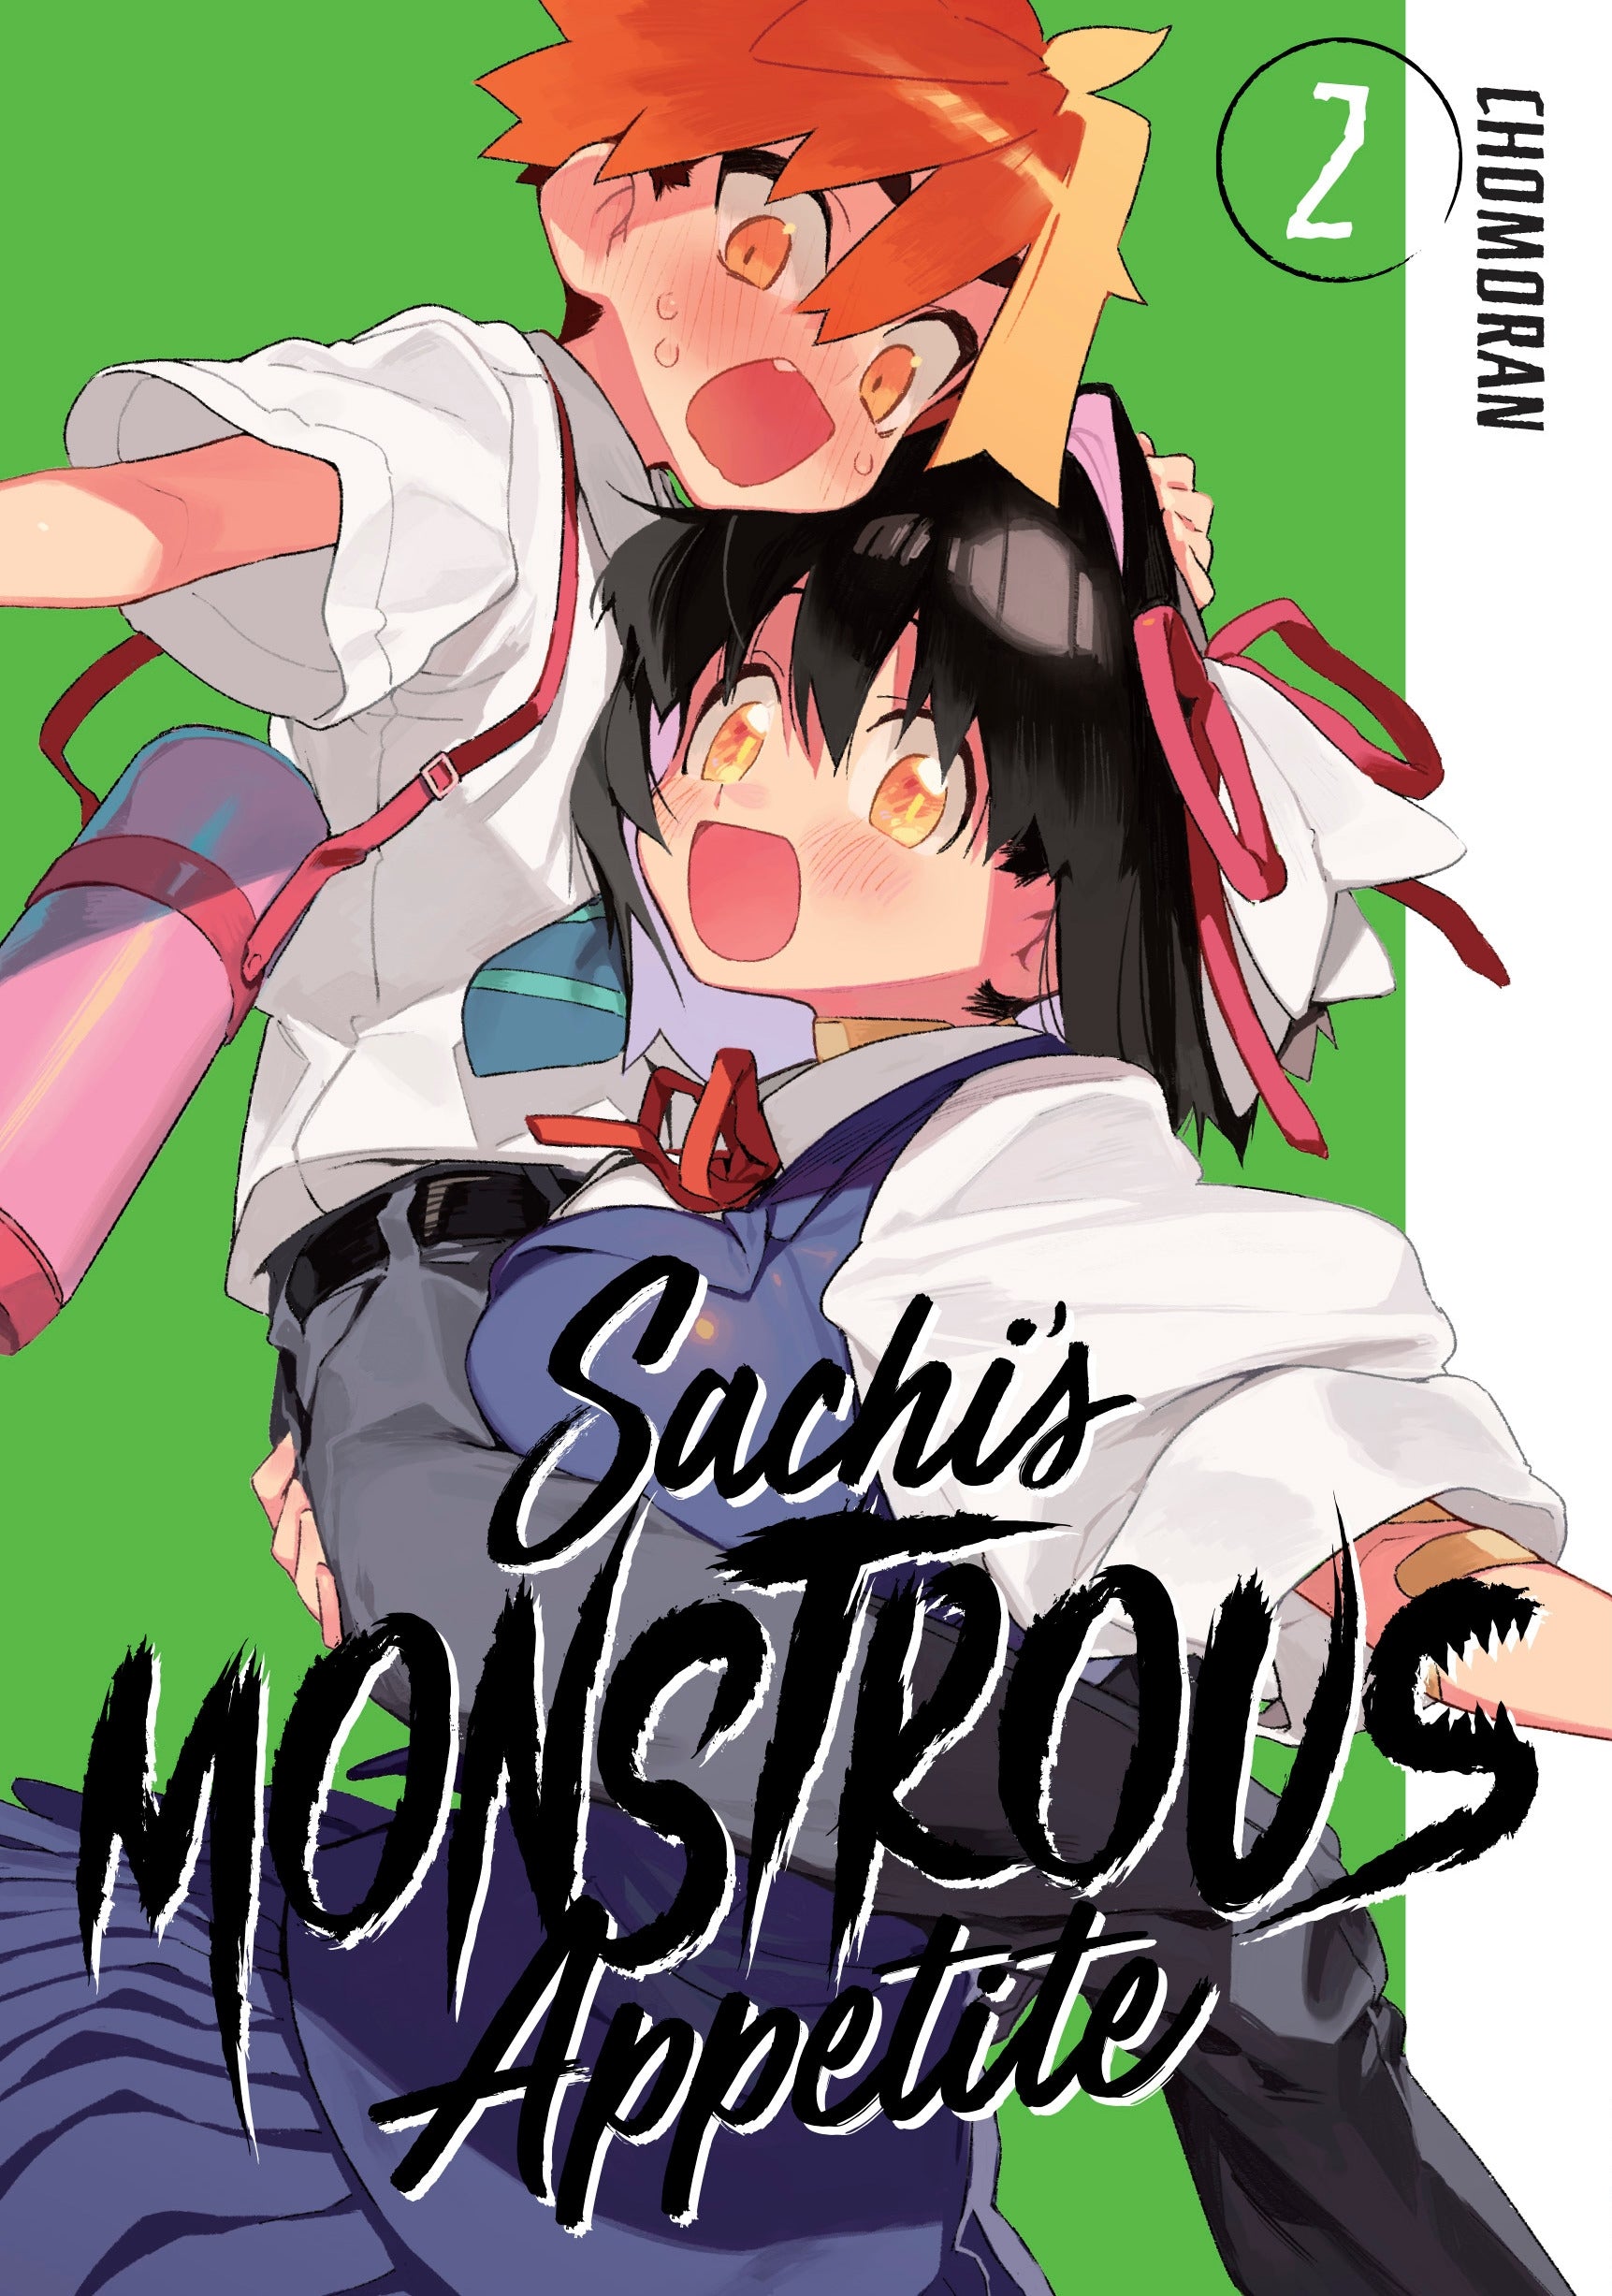 Sachi’s Monstrous Appetite, Vol. 2